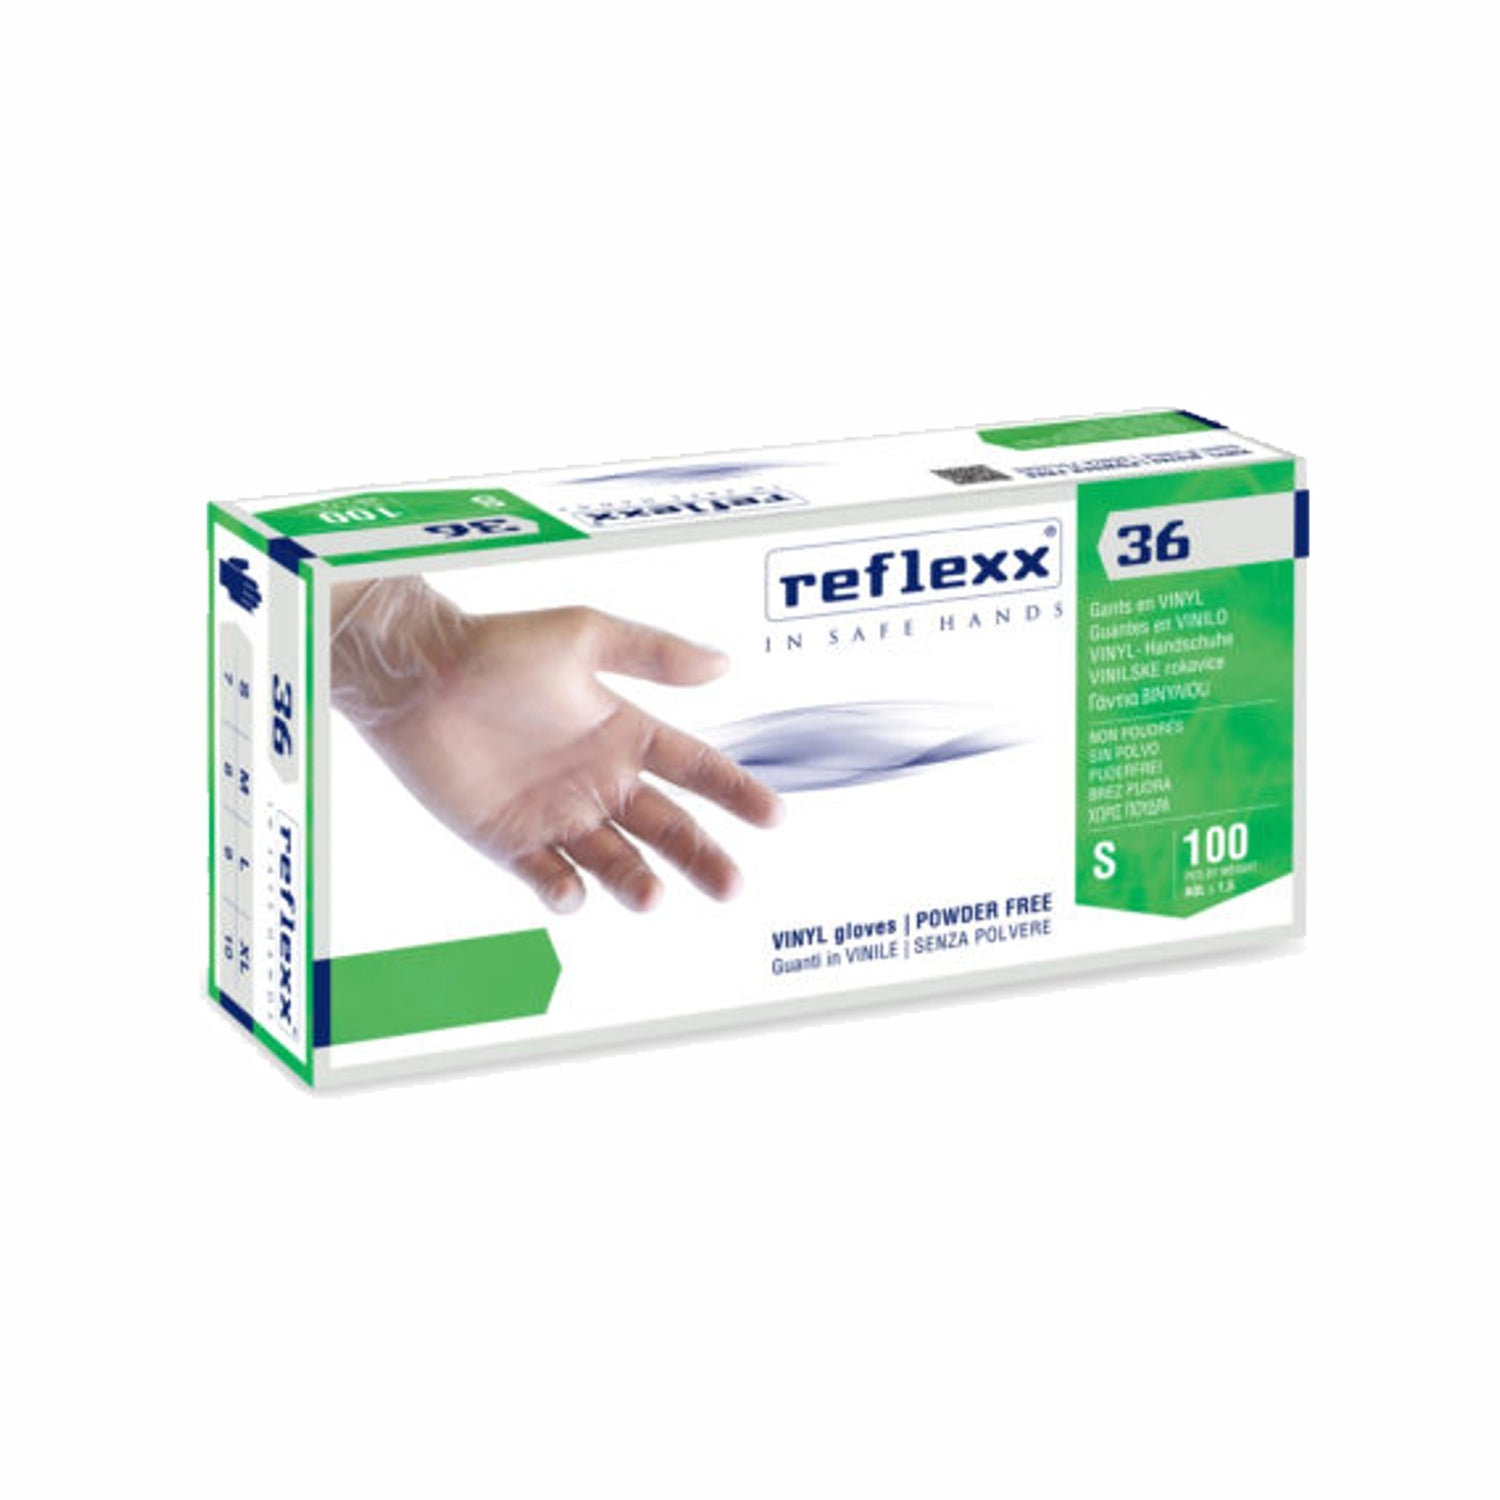 Reflexx 36 guanti monouso in vinile